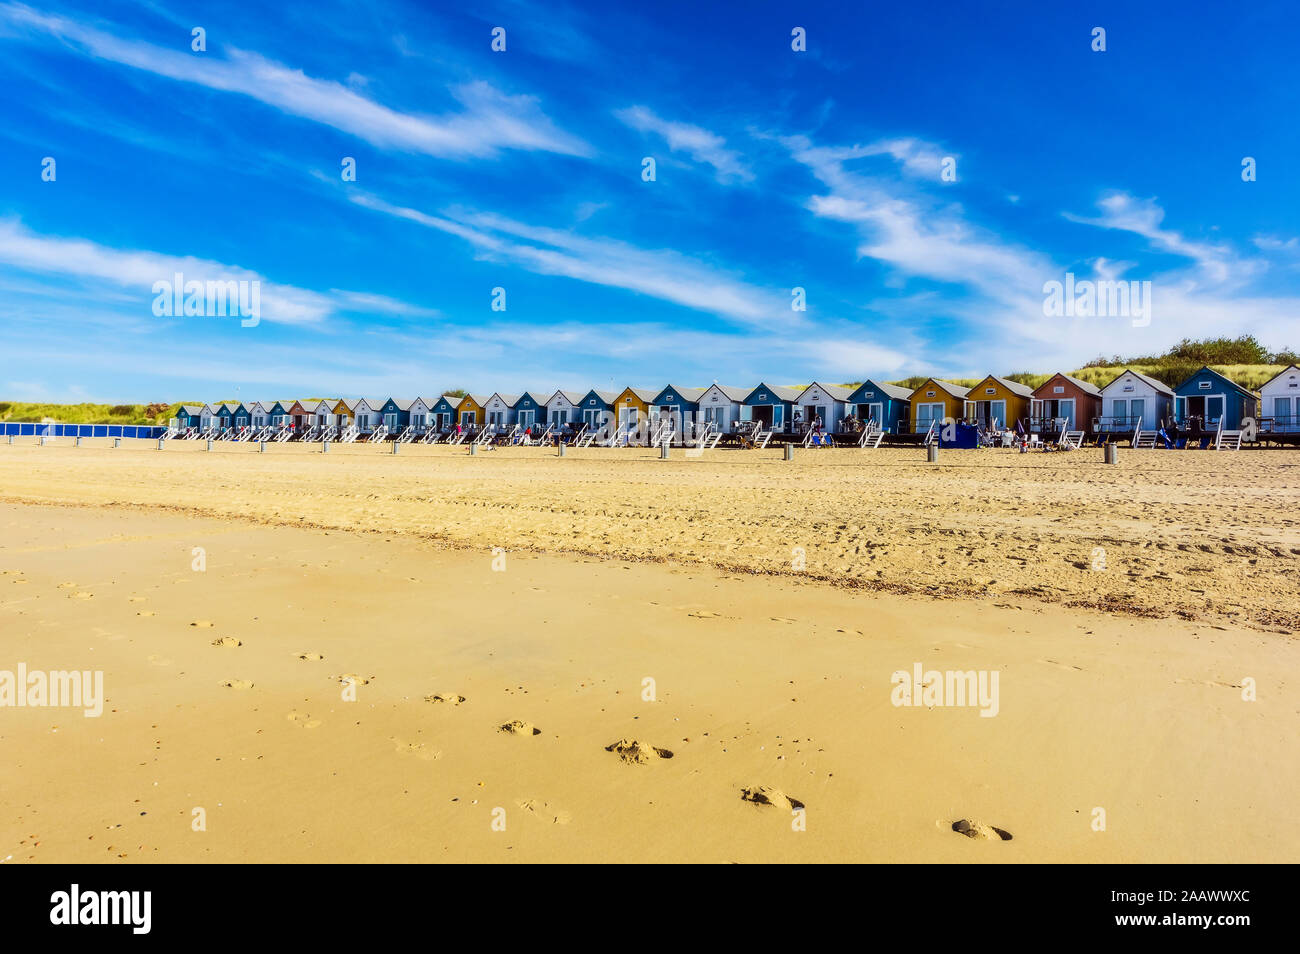 Netherlands, Zeeland, Vlissingen, row of wooden houses on sandy beach Stock Photo